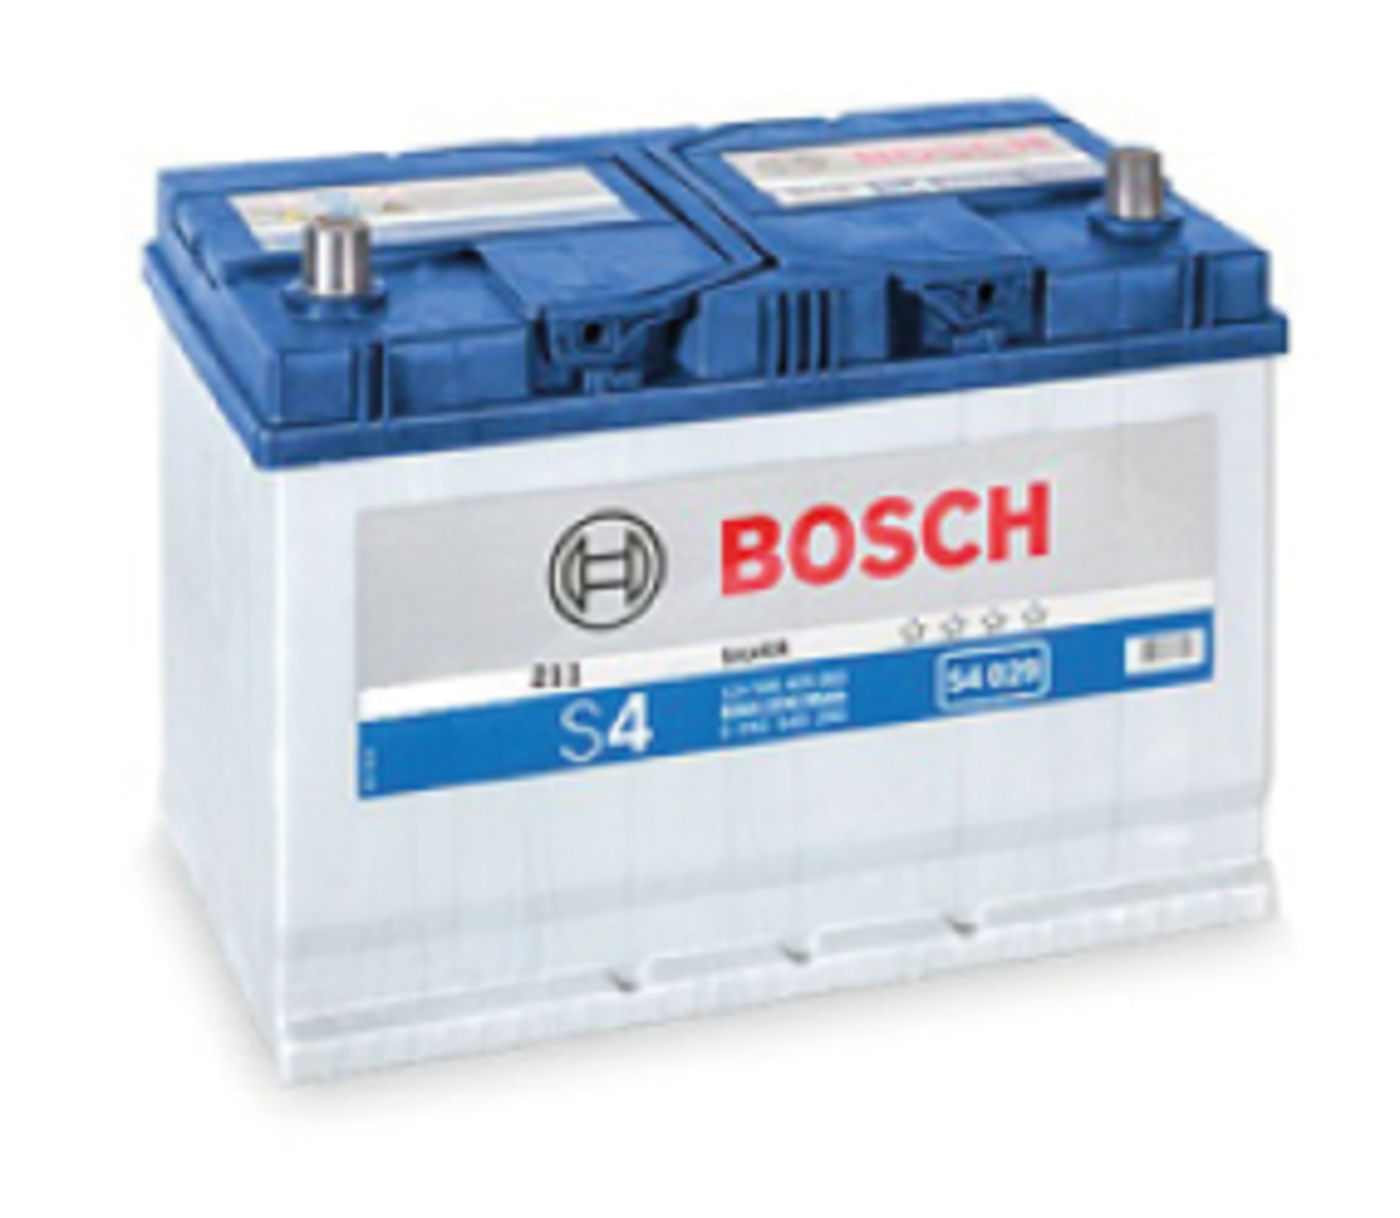 Bosch 34 HP LM